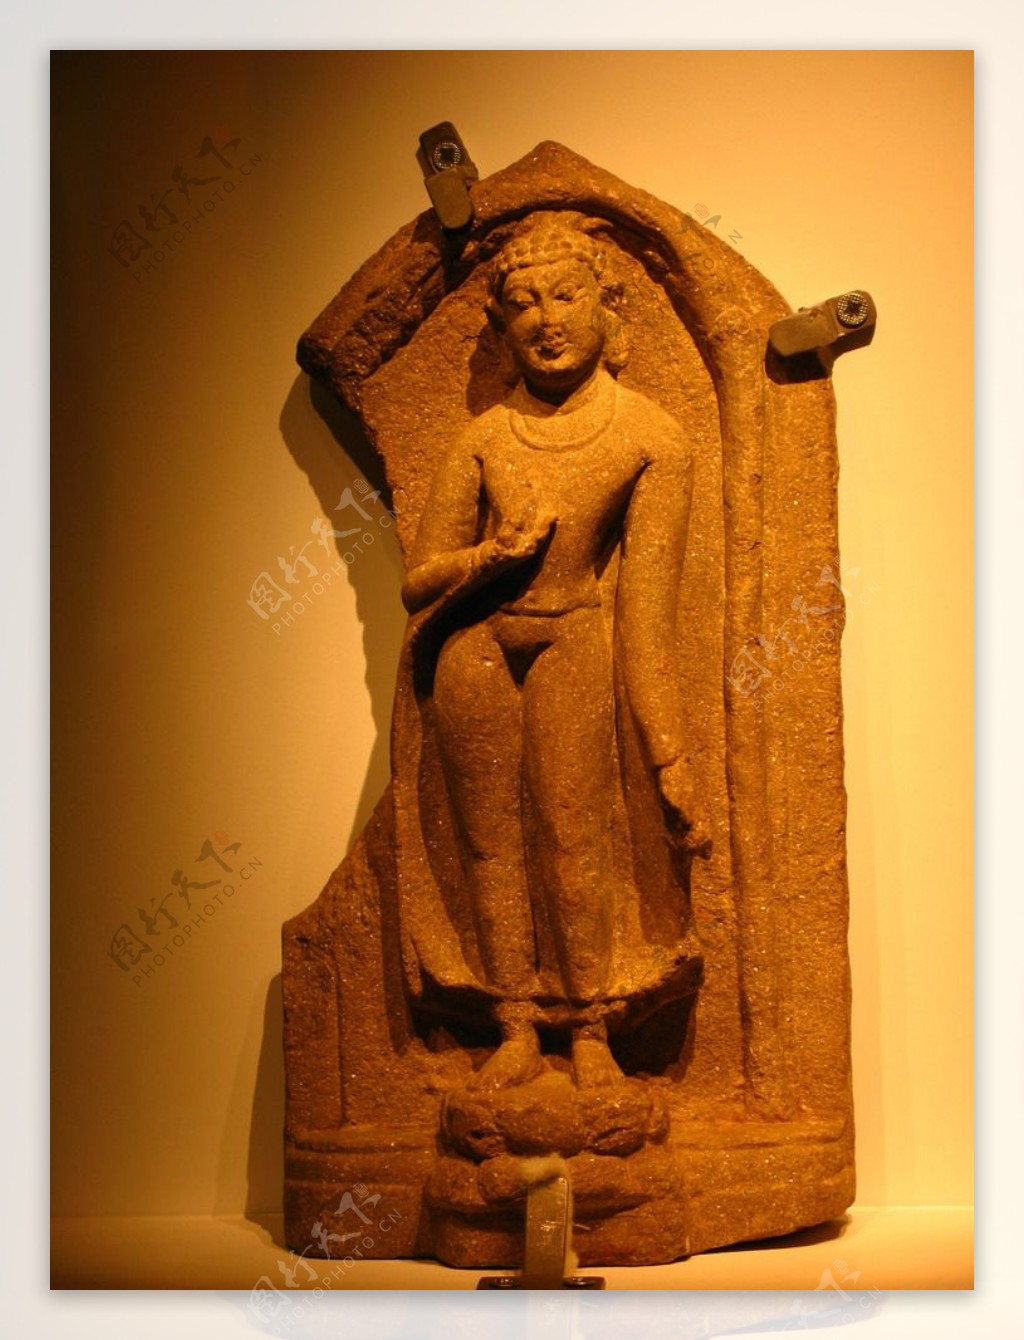 印度古雕塑艺术图片